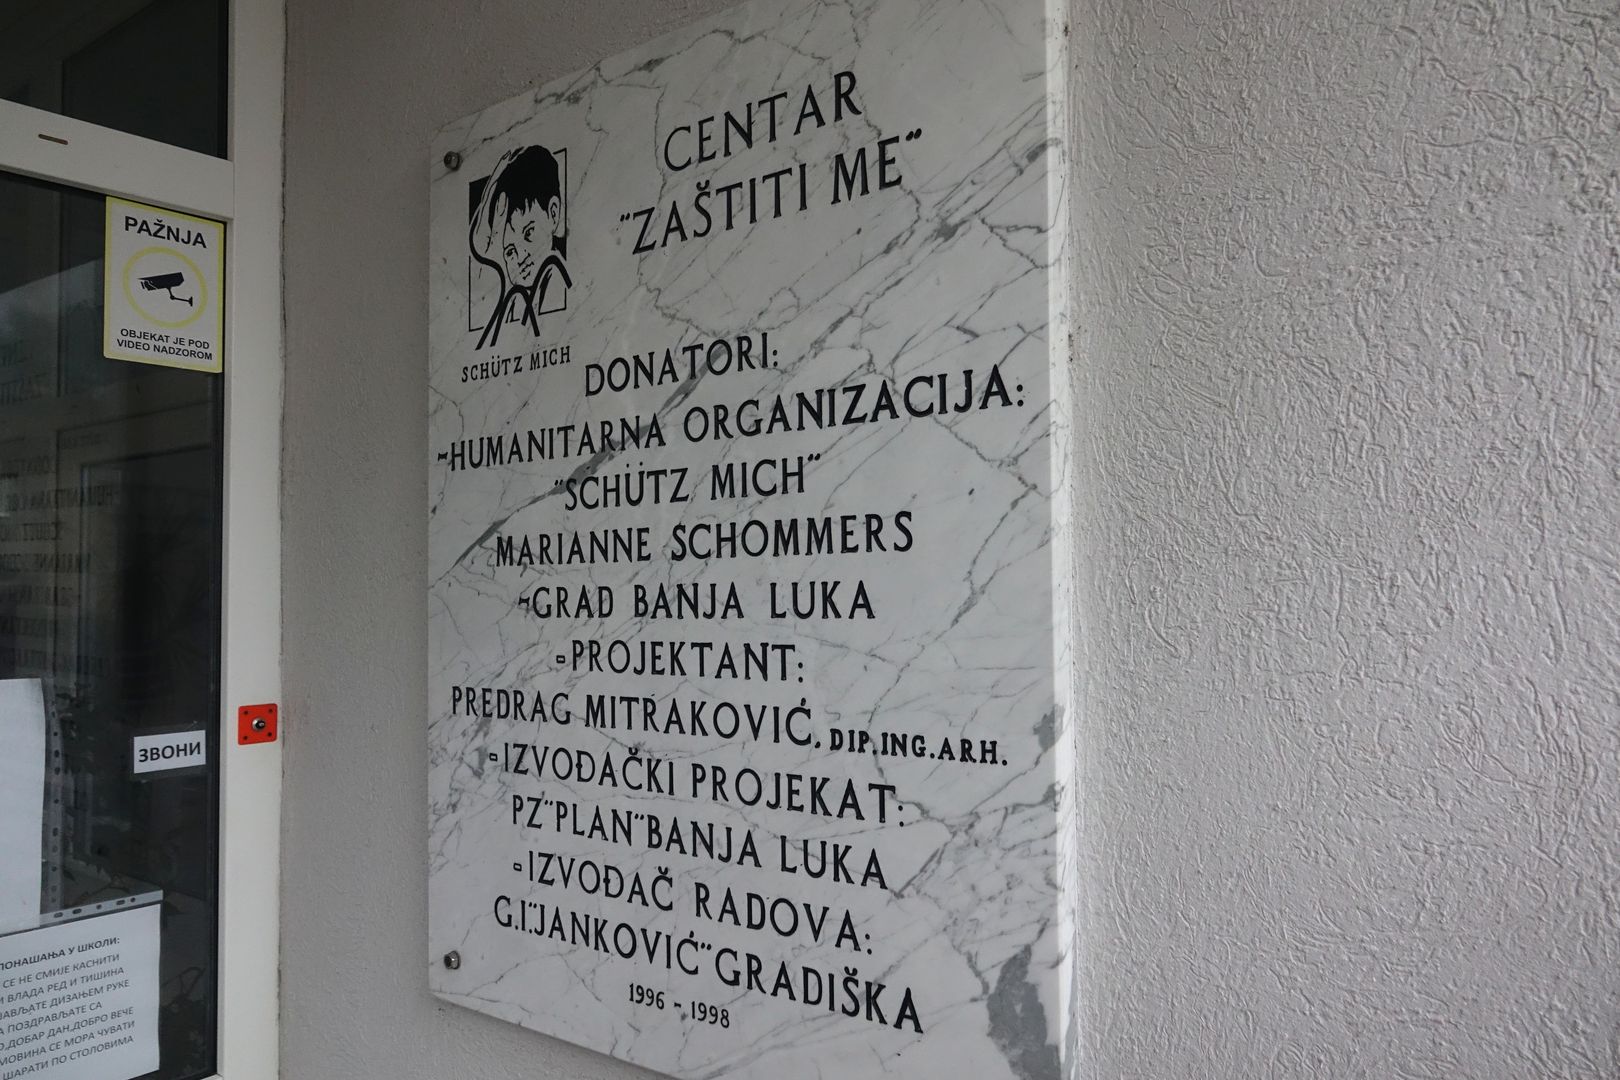 Centar zaštiti me_ Banja Luka (8)